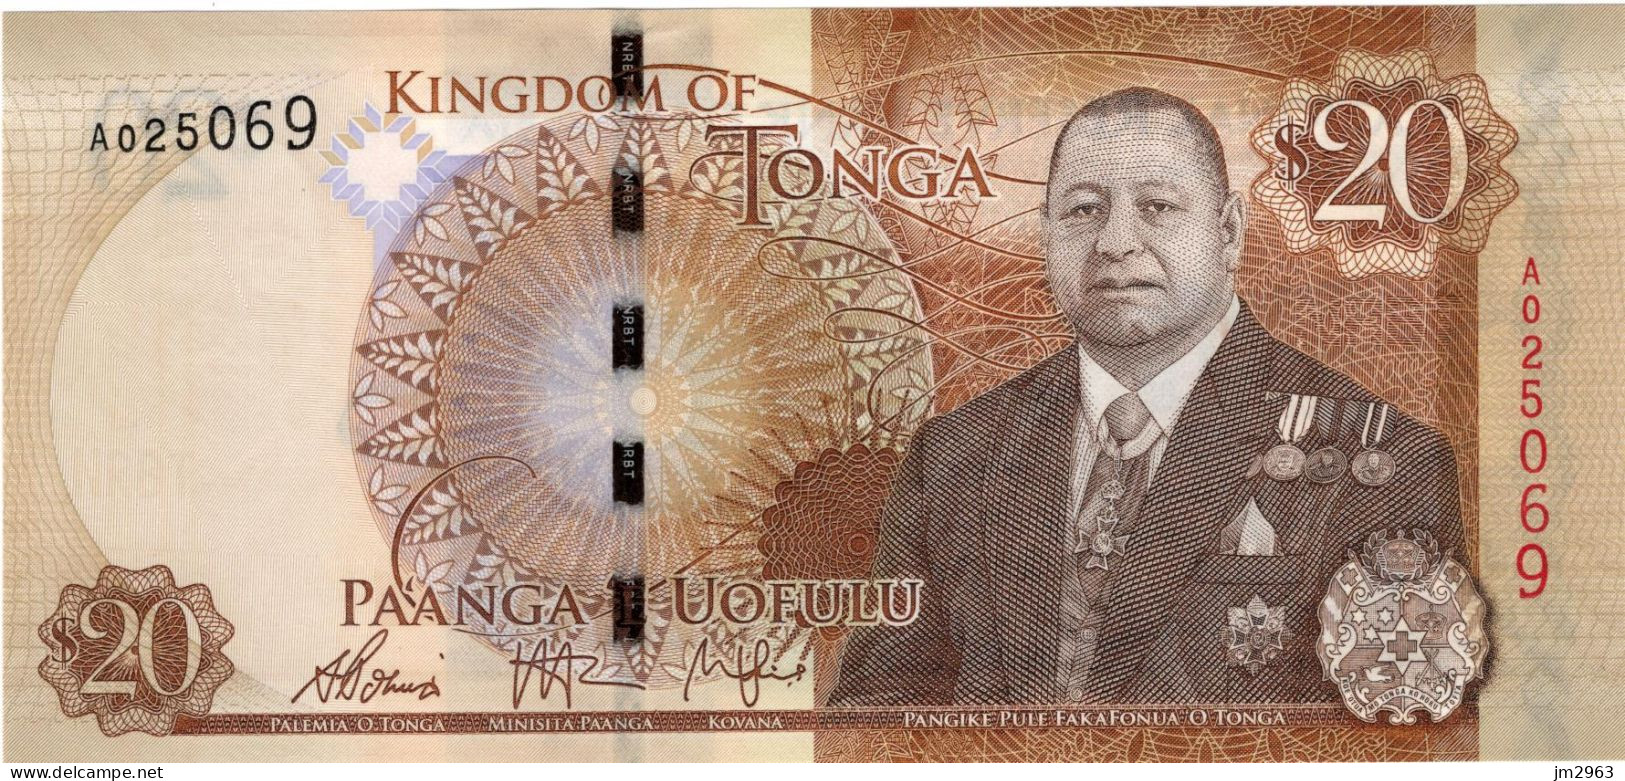 TONGA 20 PA'ANGA 2015 UNC A025069 - Tonga